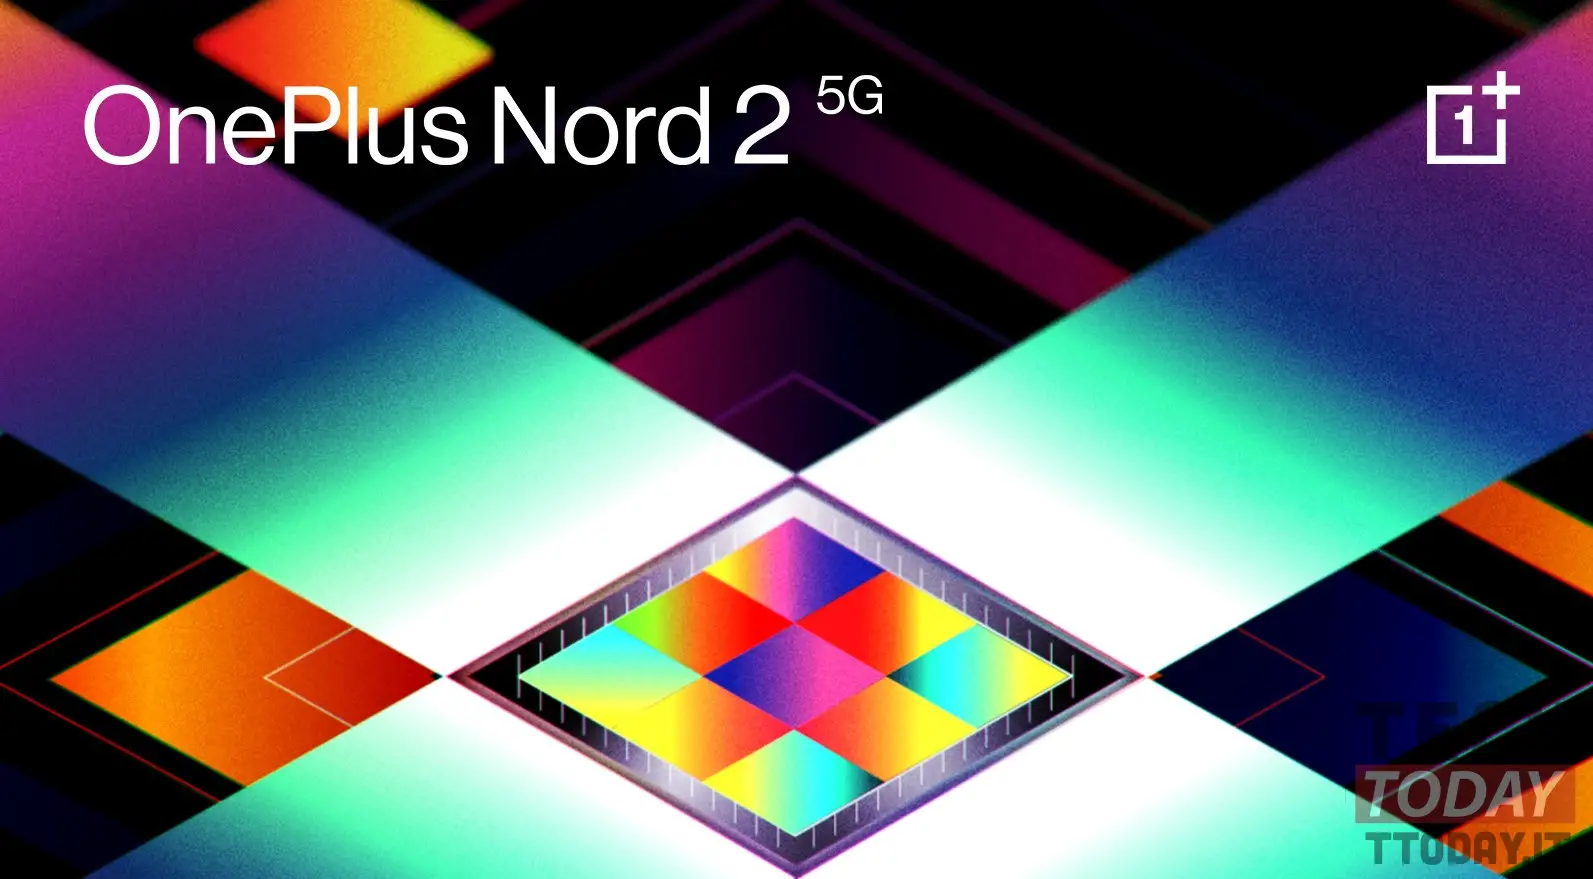 OnePlus North 2 5G